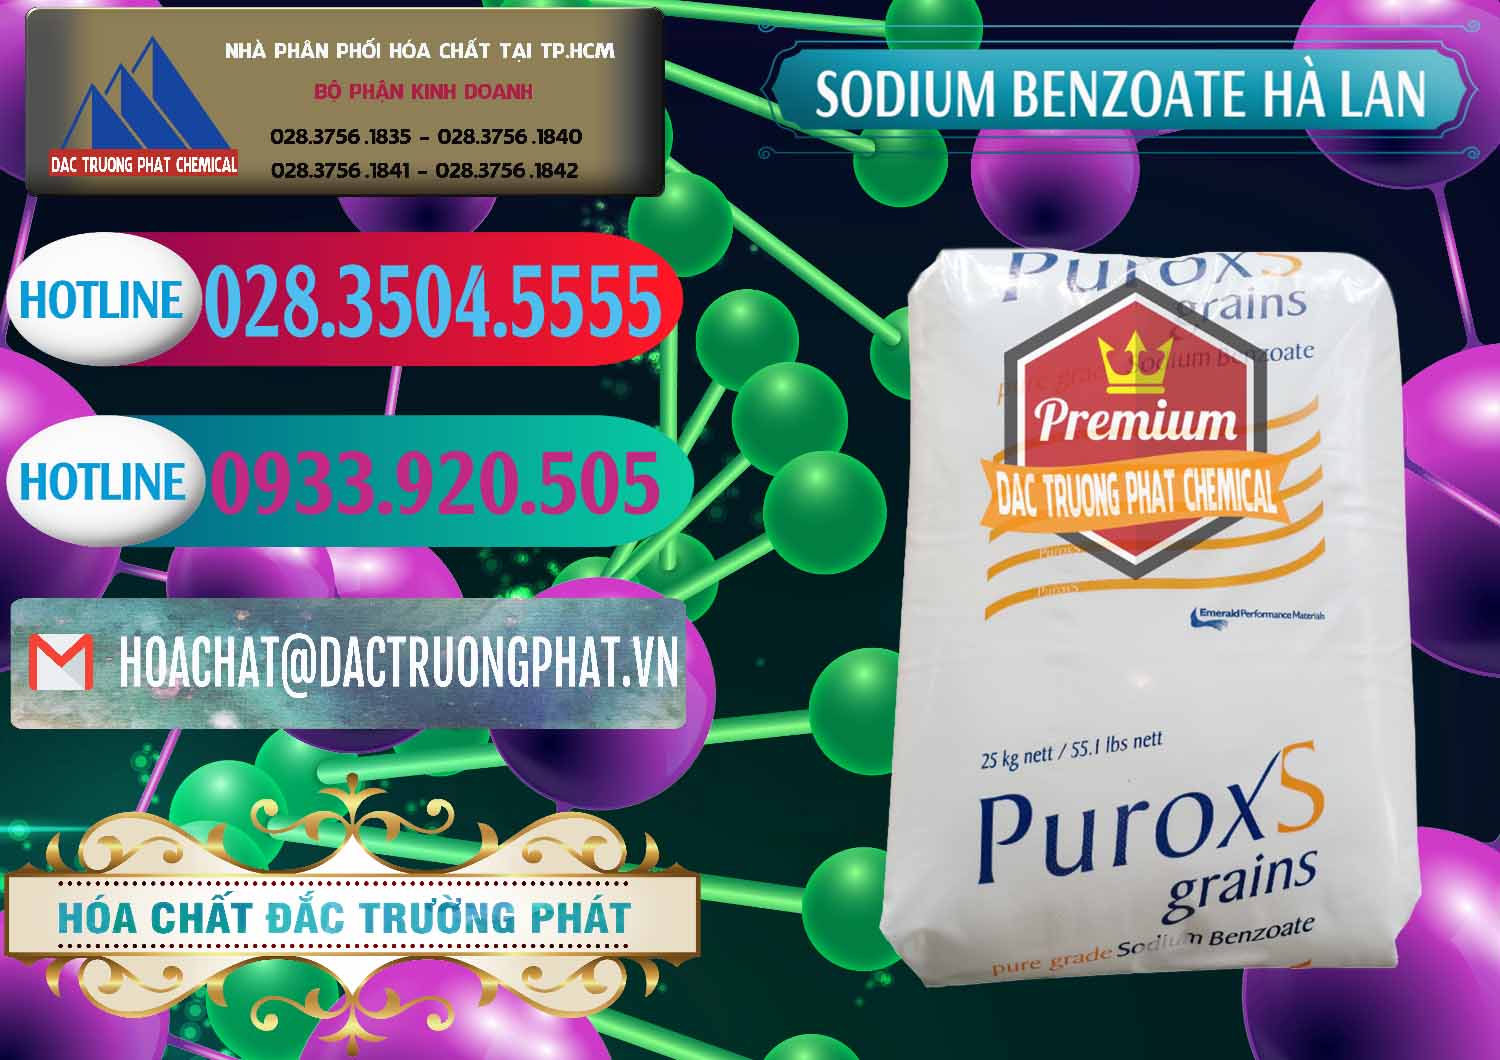 Đơn vị chuyên kinh doanh & bán Sodium Benzoate - Mốc Bột Puroxs Hà Lan Netherlands - 0467 - Công ty kinh doanh & phân phối hóa chất tại TP.HCM - truongphat.vn